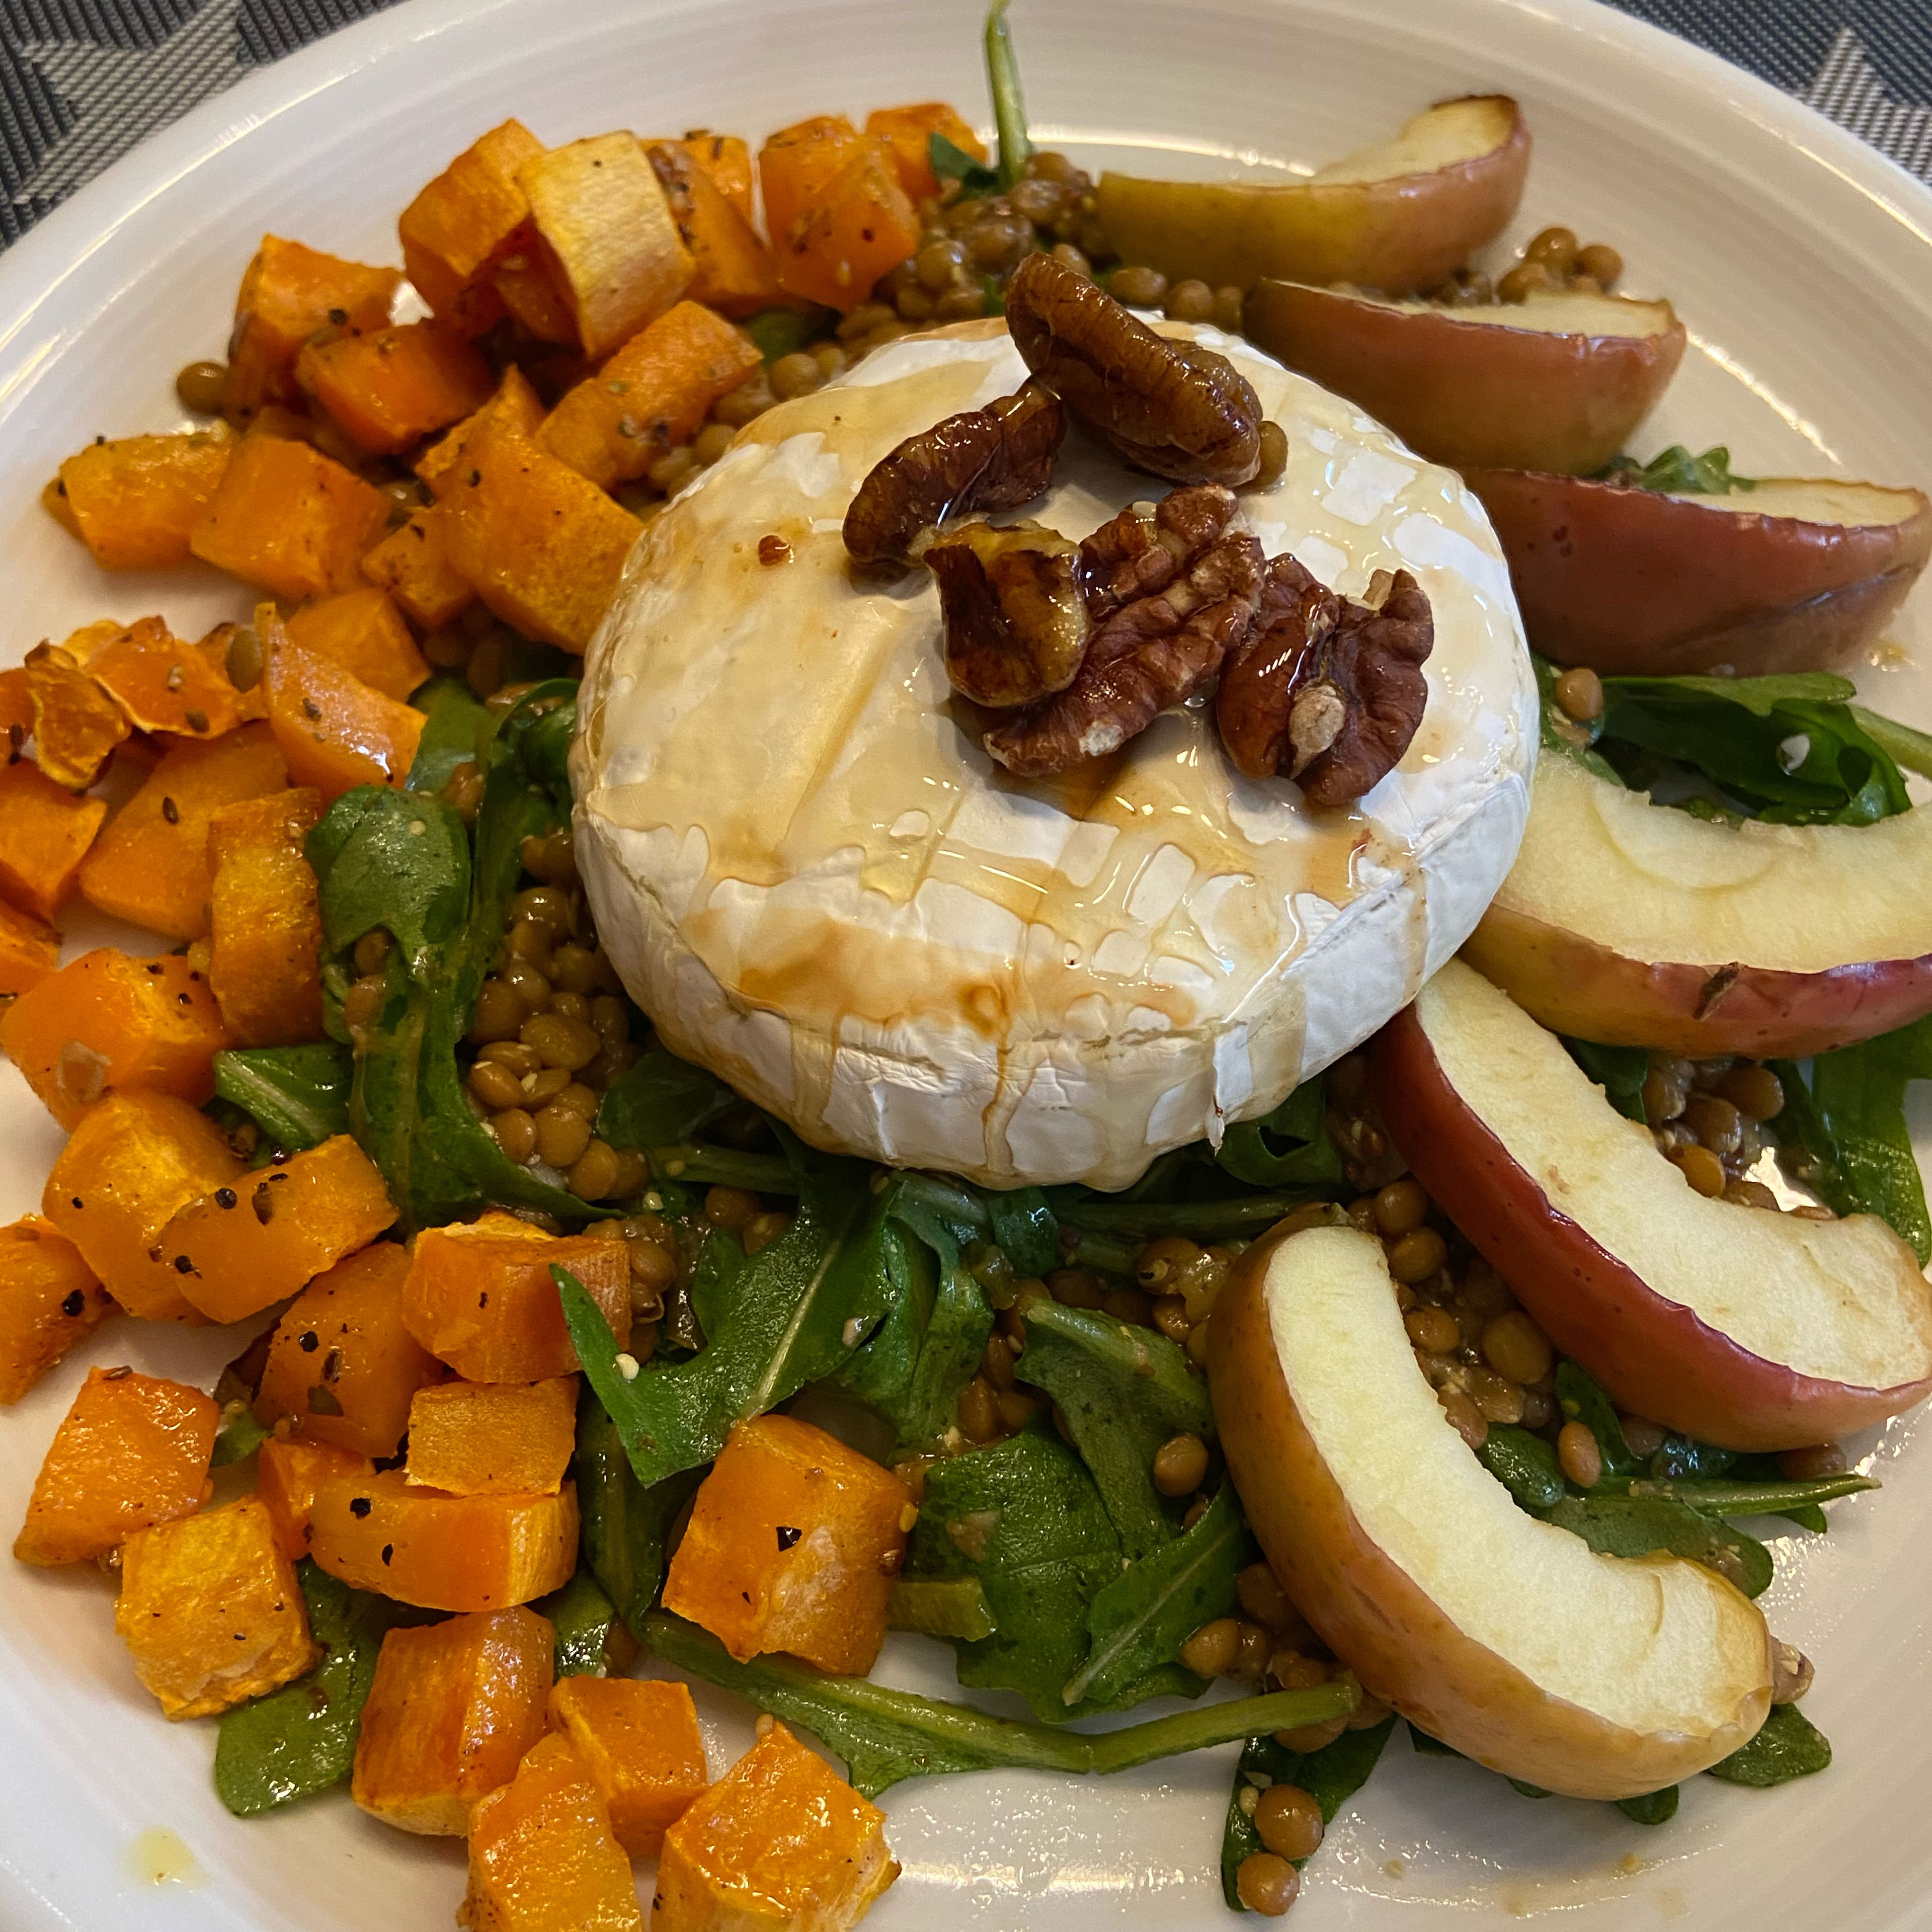 Nun den Linsensalat mittig auf einen Teller geben. Den Camembert in der Mitte auf dem Salat platzieren und mit den Pecannüssen dekorieren. Die Süßkartoffelwürfel und die Apfelspalten auf den Teller geben.